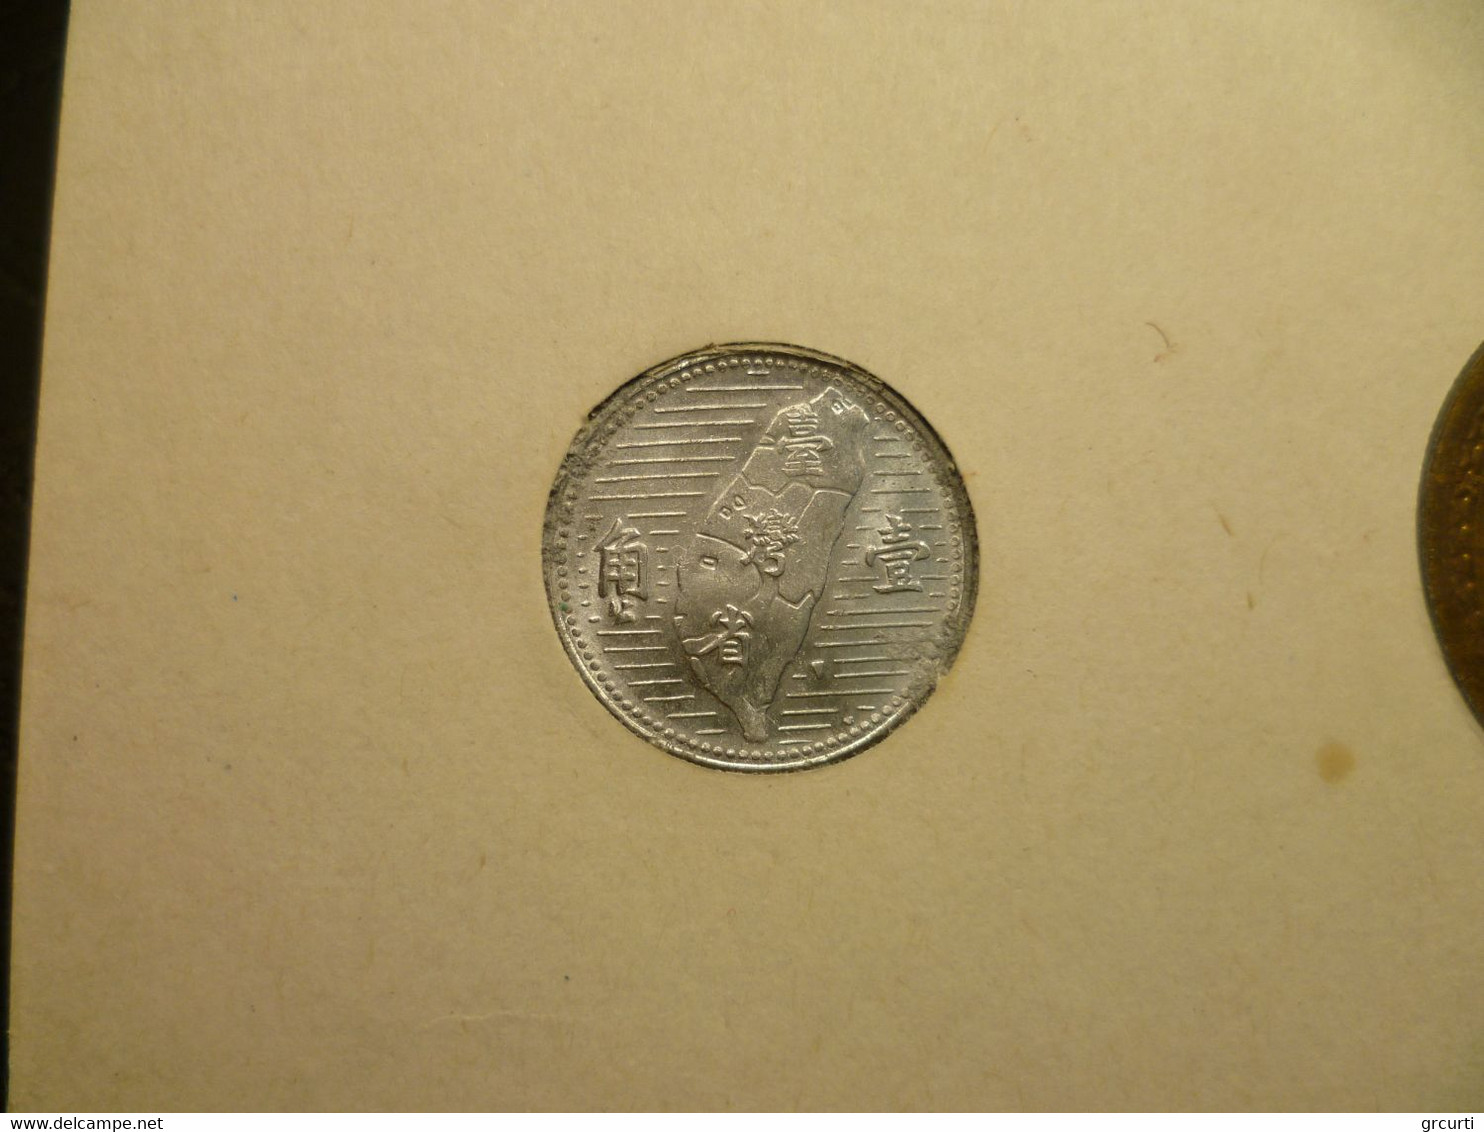 Taiwan - Anco set - 3 monete di cui una in argento